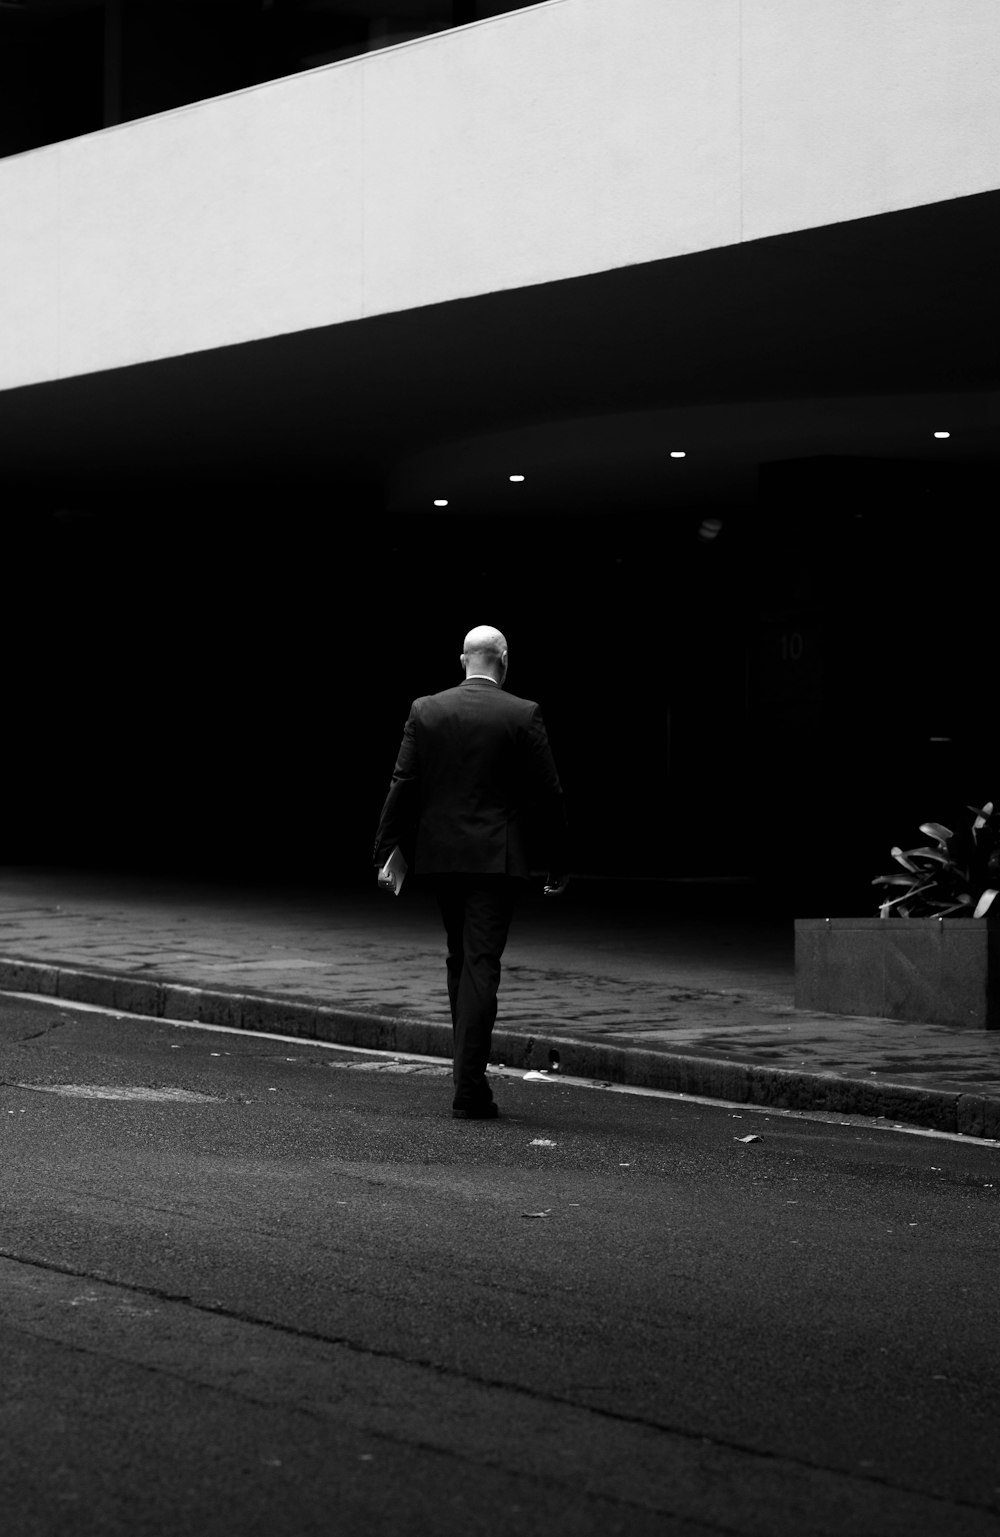 검은 코트를 입은 남자가 거리를 걷고 있다